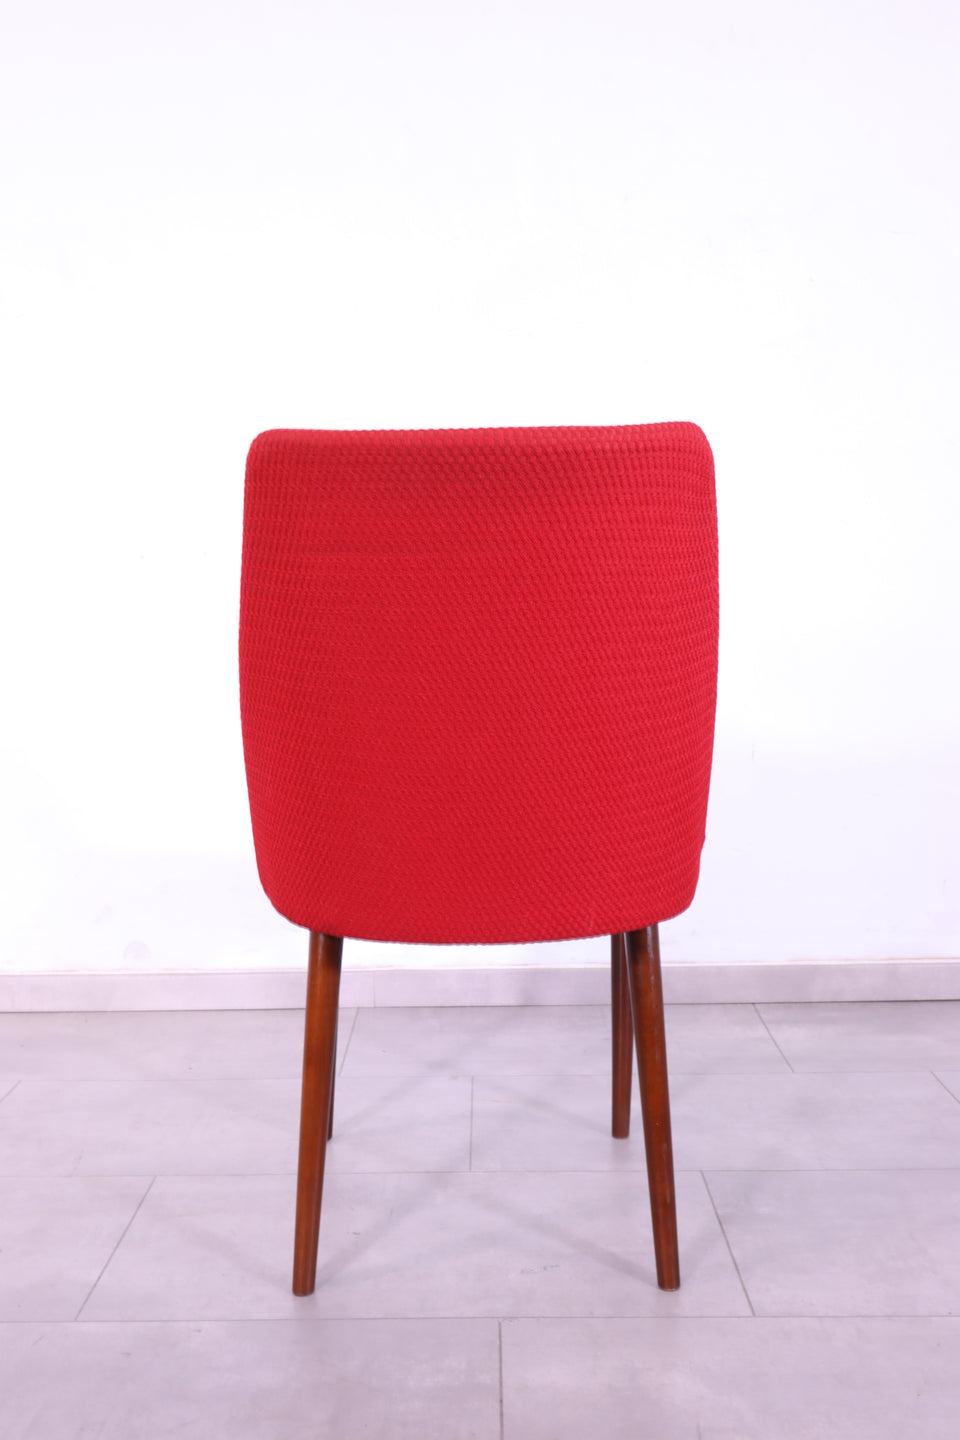 Wunderschöner Mid Century Stuhl Retro Rot Cocktail Stuhl 2 von 2